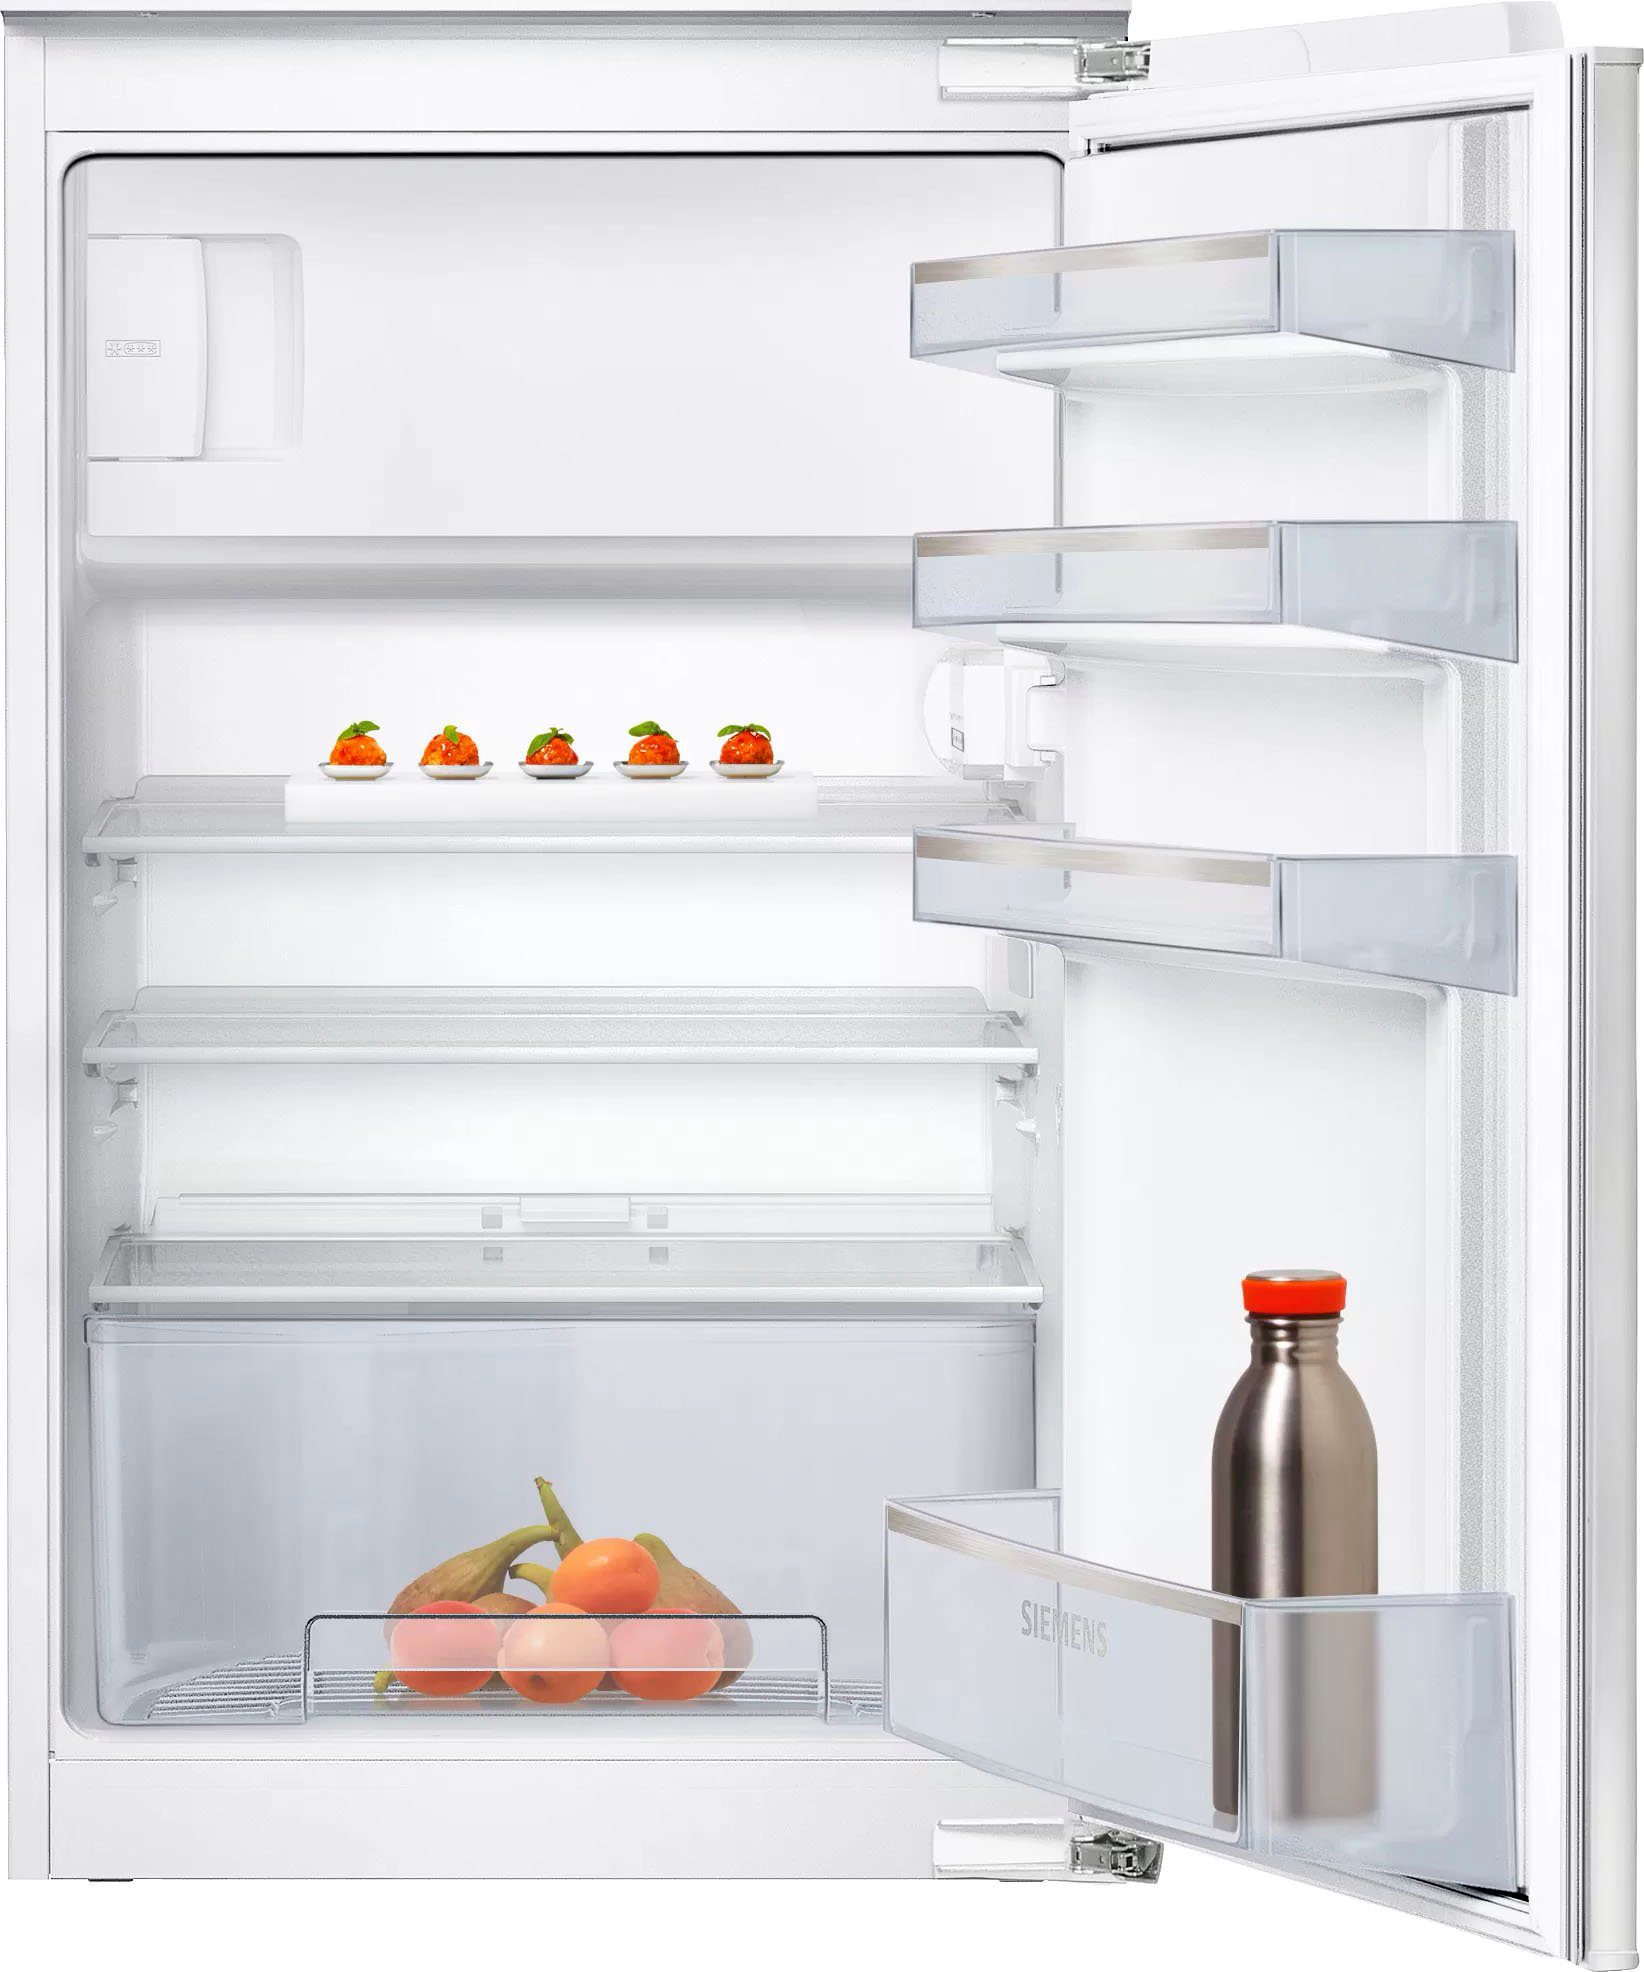 SIEMENS Einbaukühlschrank iQ100 KI18LNFF0, 87,4 cm hoch, 54,1 cm breit